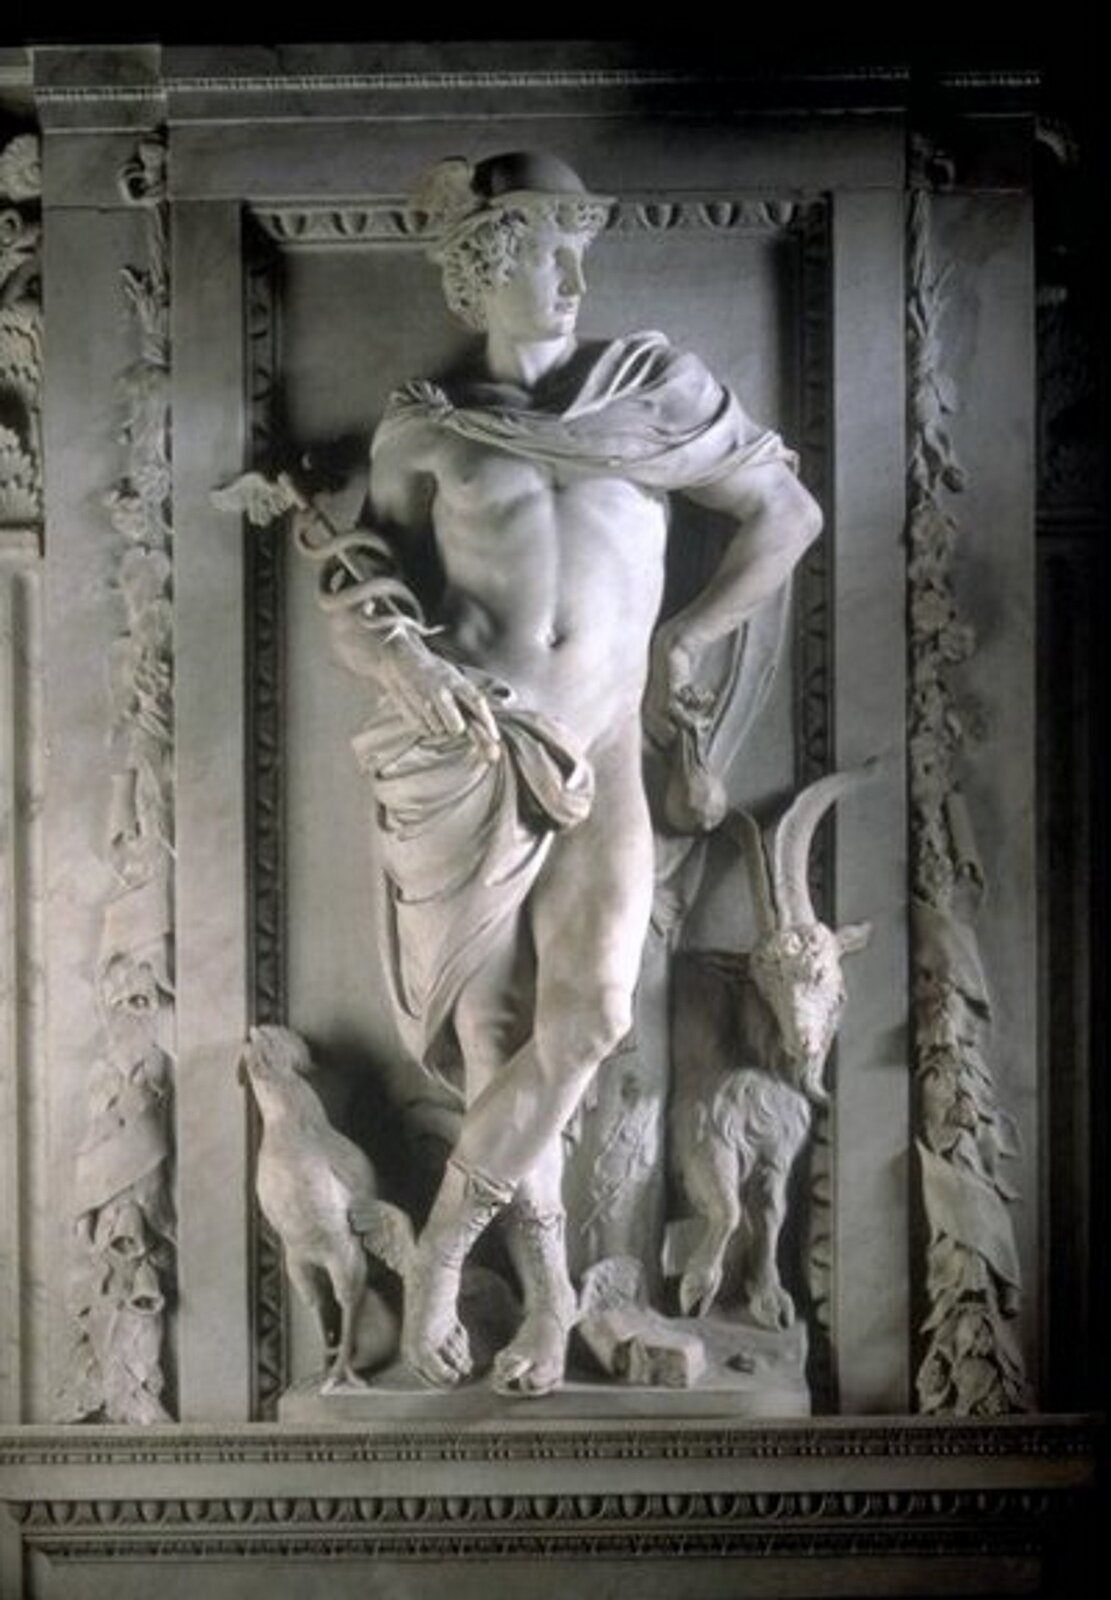 Ilustracja przedstawia rzeźbę Merkurego. Bóg ukazany jest z charakterystycznym kaduceuszem w dłoni, na głowie ma podróżny petasos, a na stopach sandały ze skrzydłami. Spod kapelusza wystają kręcone włosy. Cała sylwetka ustawiona jest esowato, nogi poniżej kolan są skrzyżowane. Płaszcz spowija ramiona boga oraz osłania jego podbrzusze. U stóp Merkurego stoi kozioł z dużymi rogami oraz kogut.